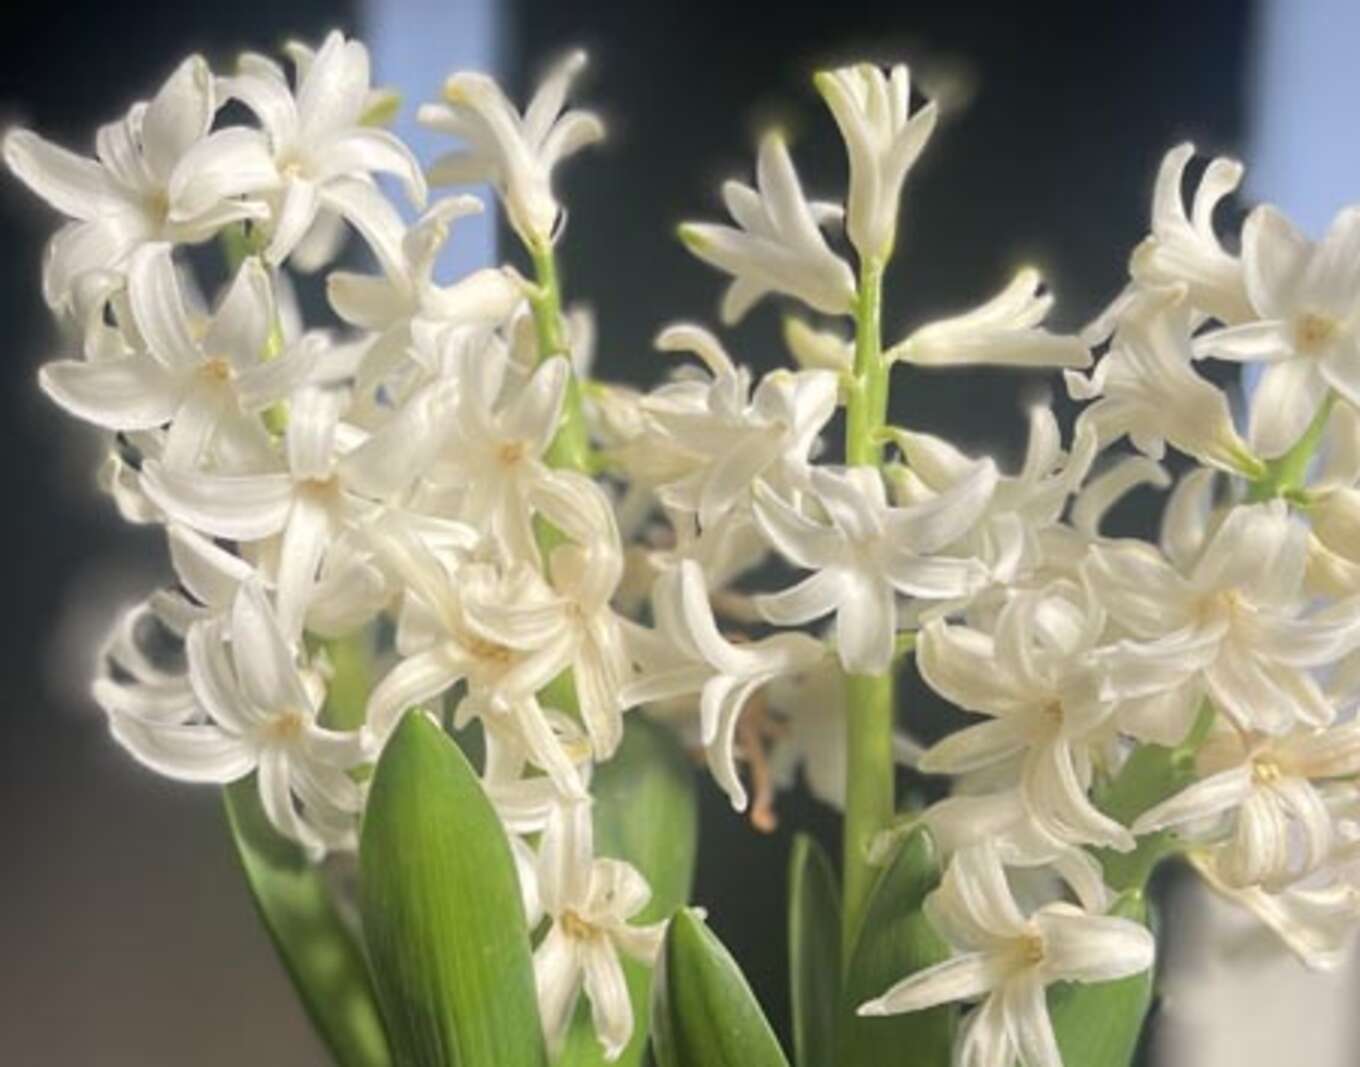 ヒヤシンス。気品を感じる光沢のある白い花です。